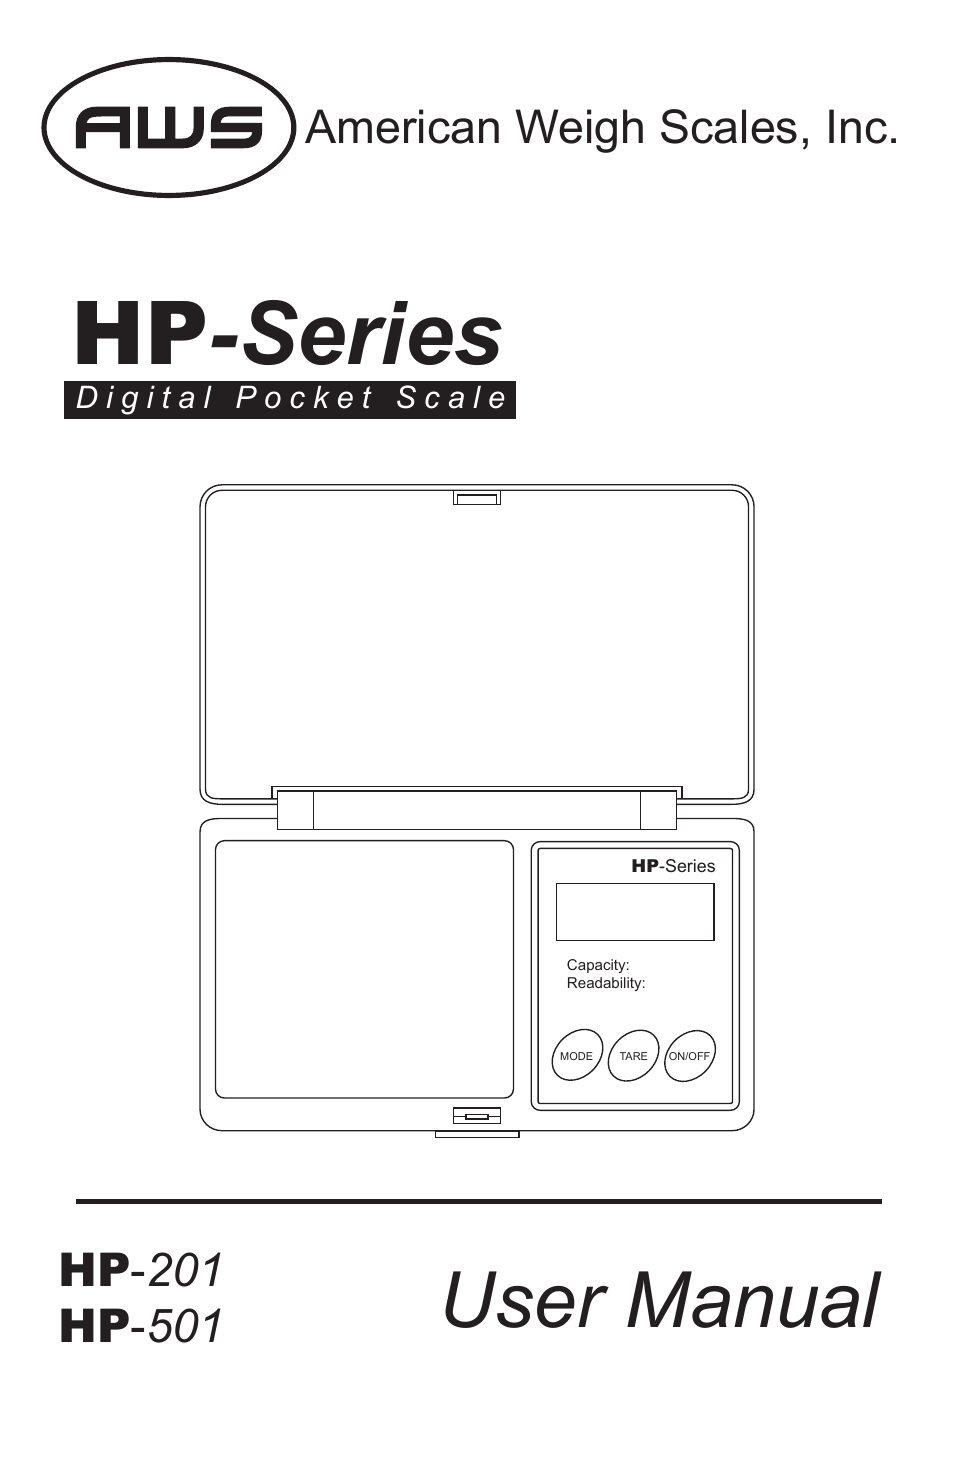 HP-501